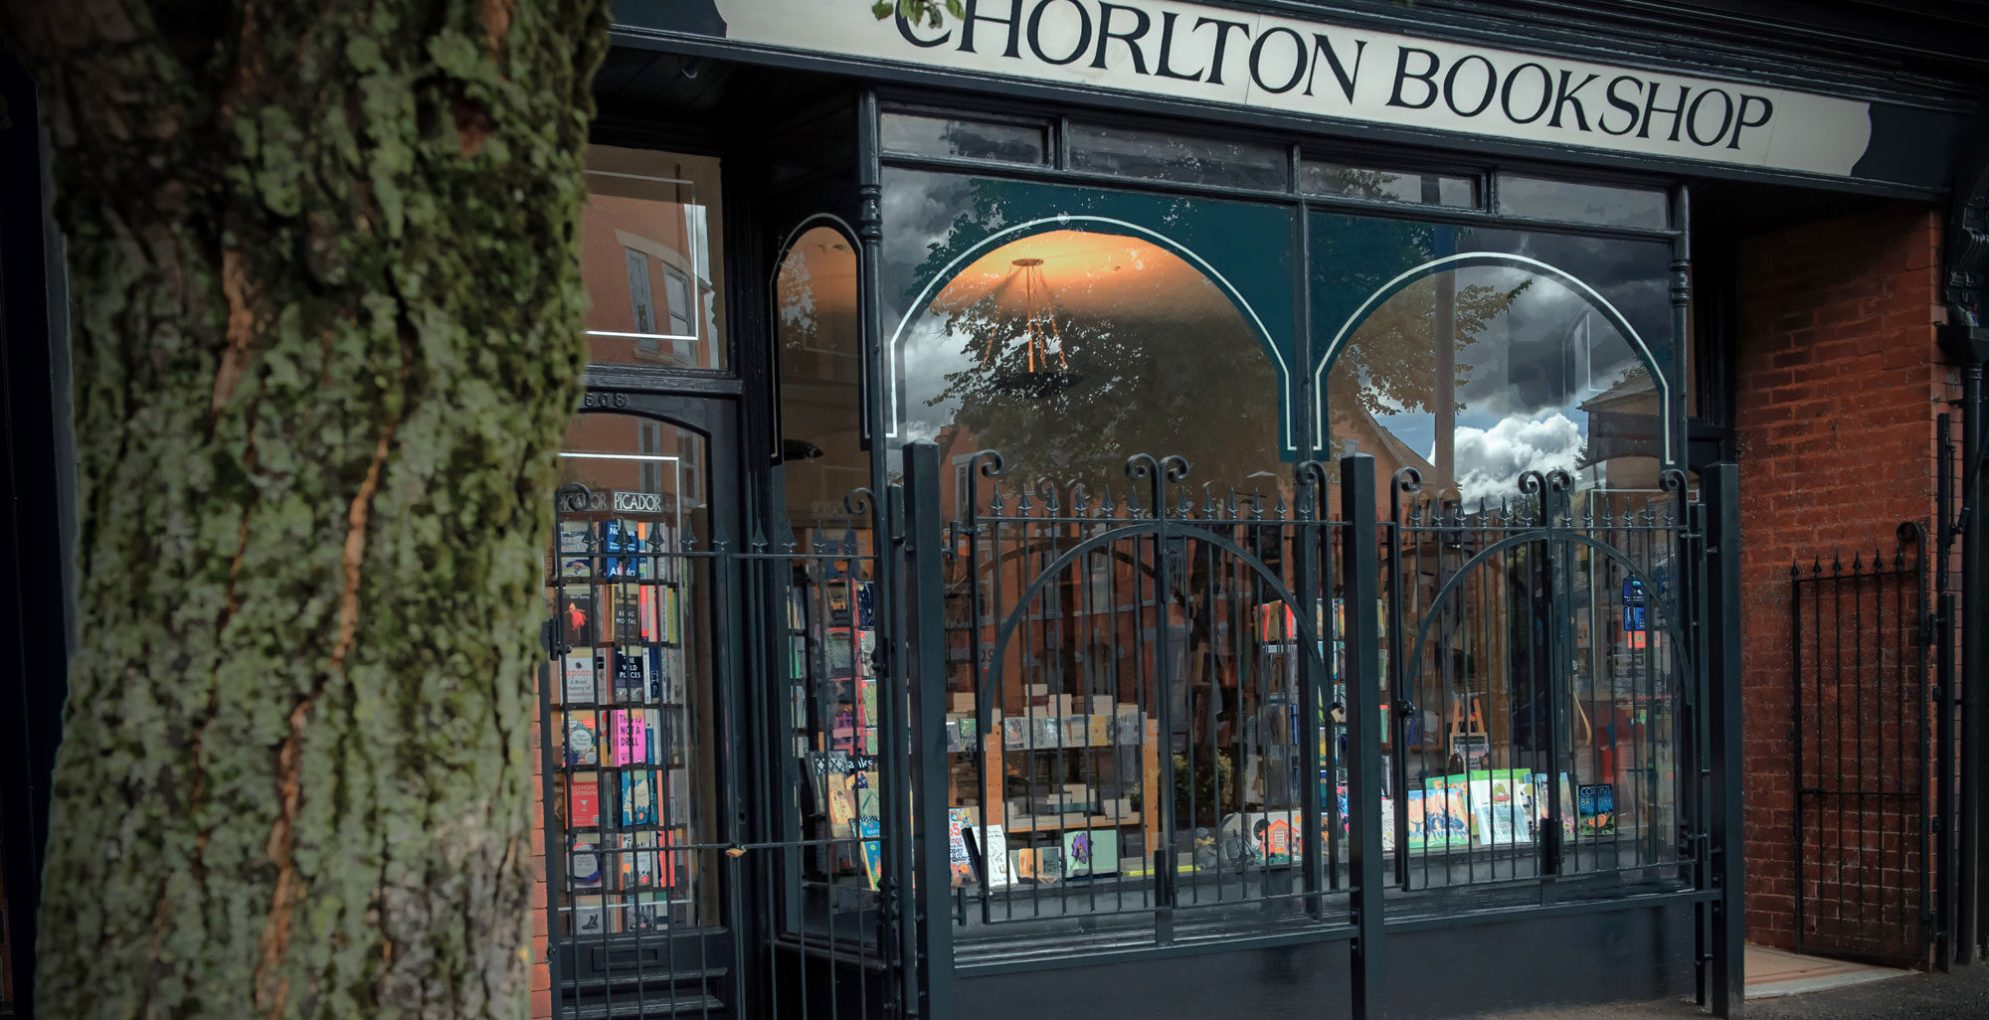 Chorlton Bookshop